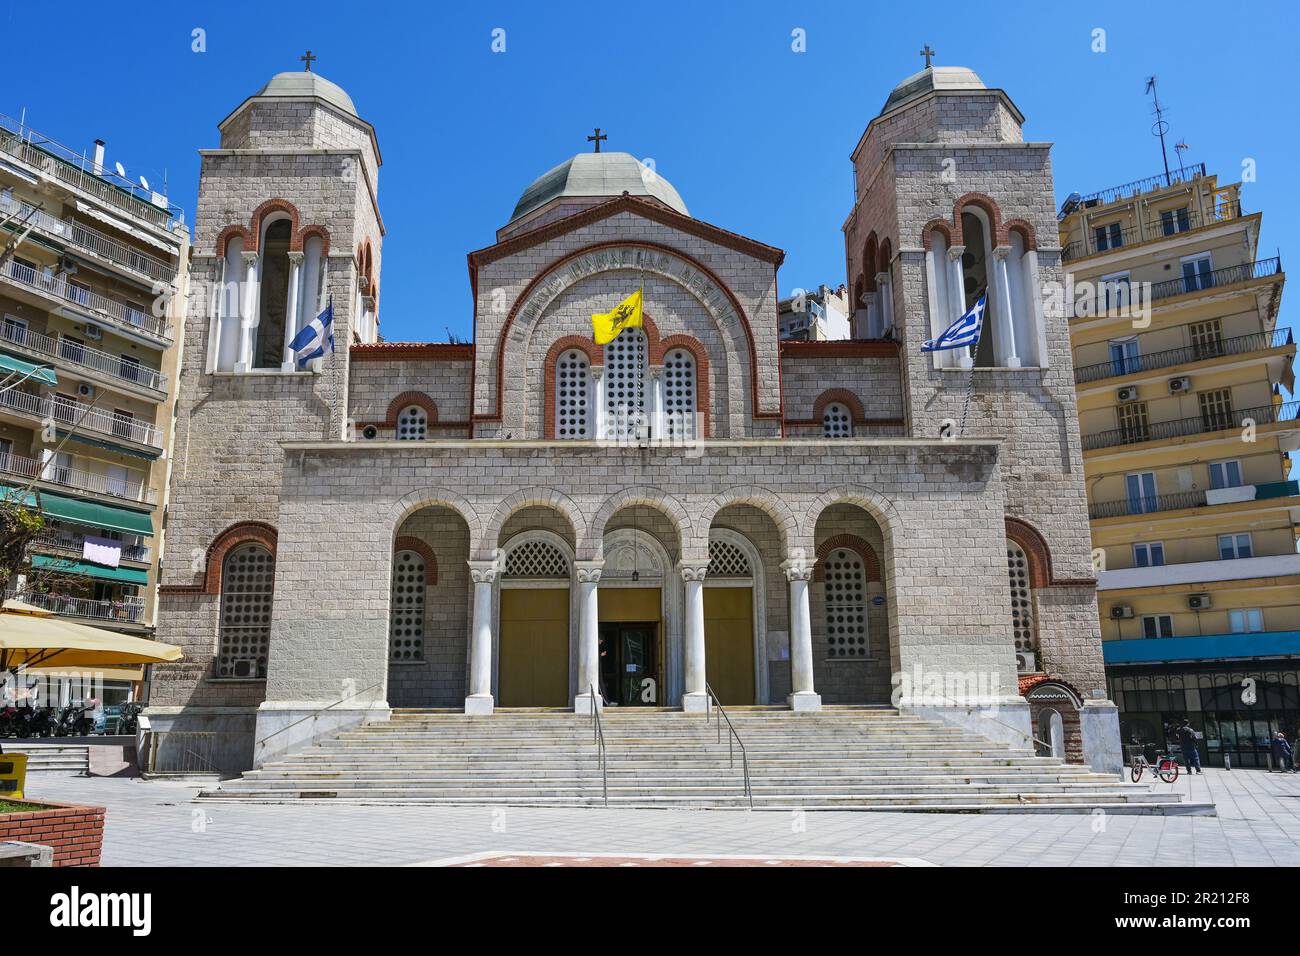 Heilige Kirche Panagia Dexia (Mutter Gottes) die orthodoxe Kirche im neo-byzantinischen Stil wurde 1956 im Stadtzentrum von Thessaloniki, Griechenland, Stockfoto